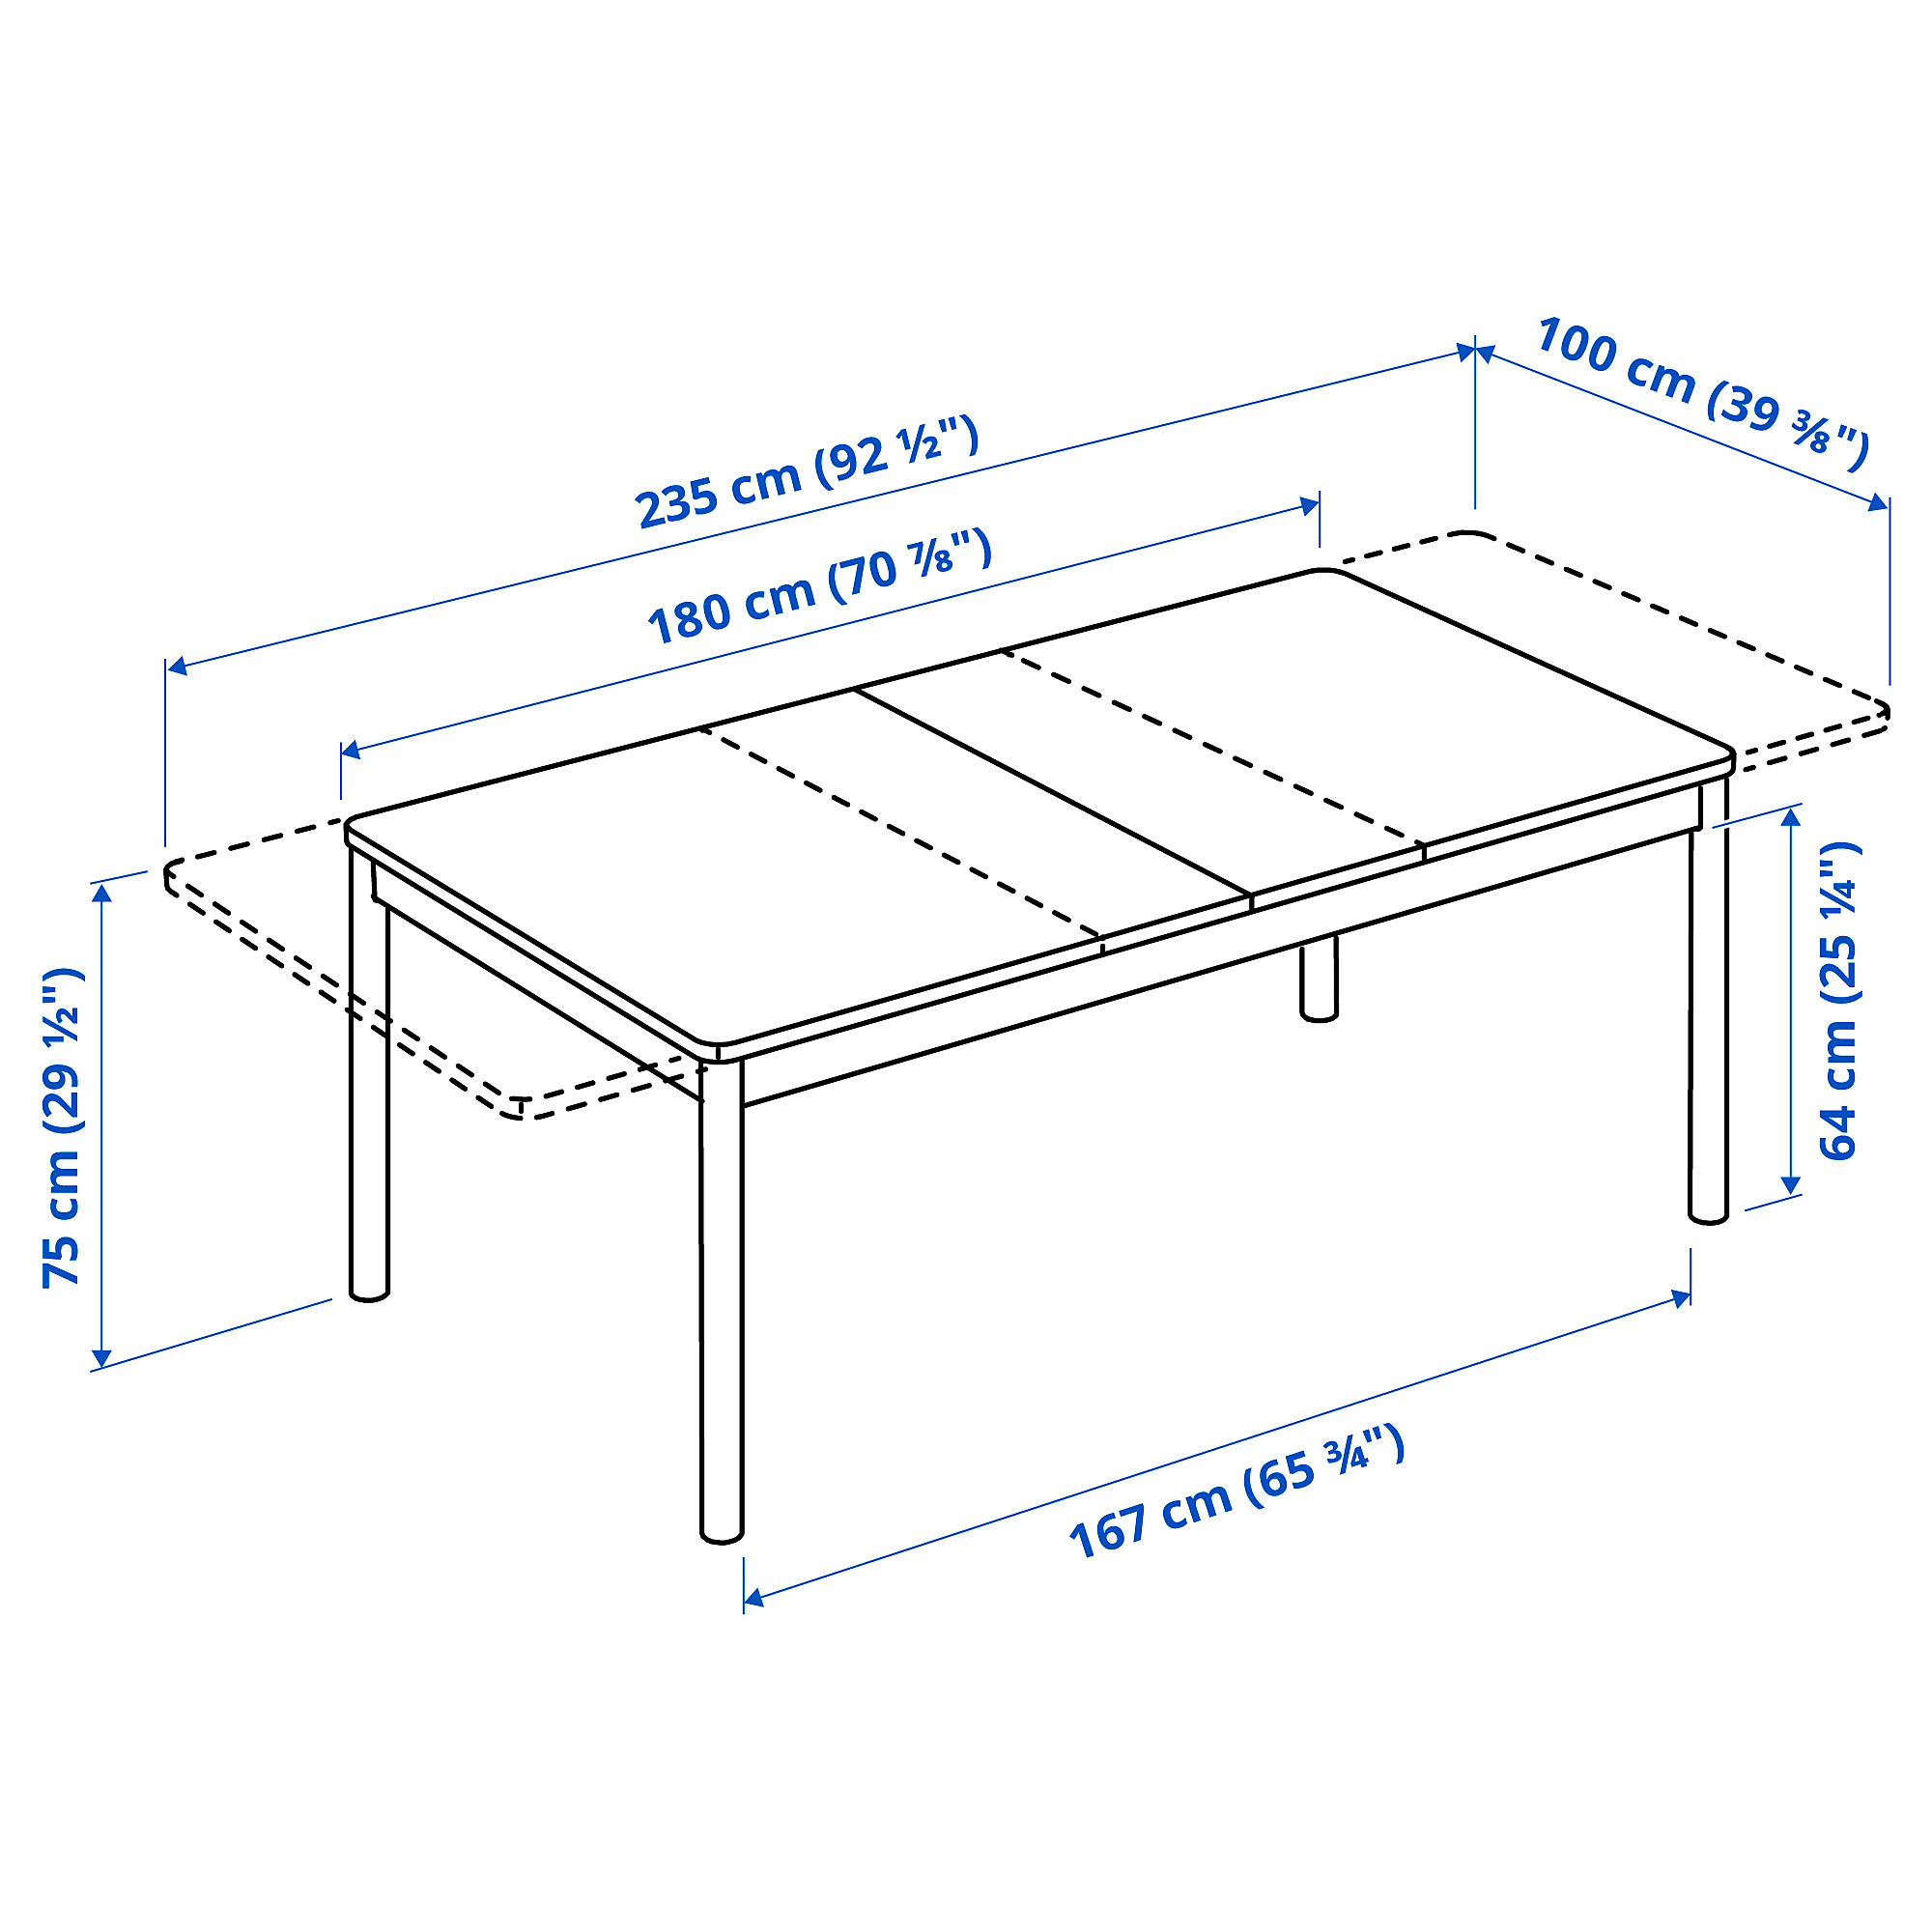 RÖNNINGE extendable table